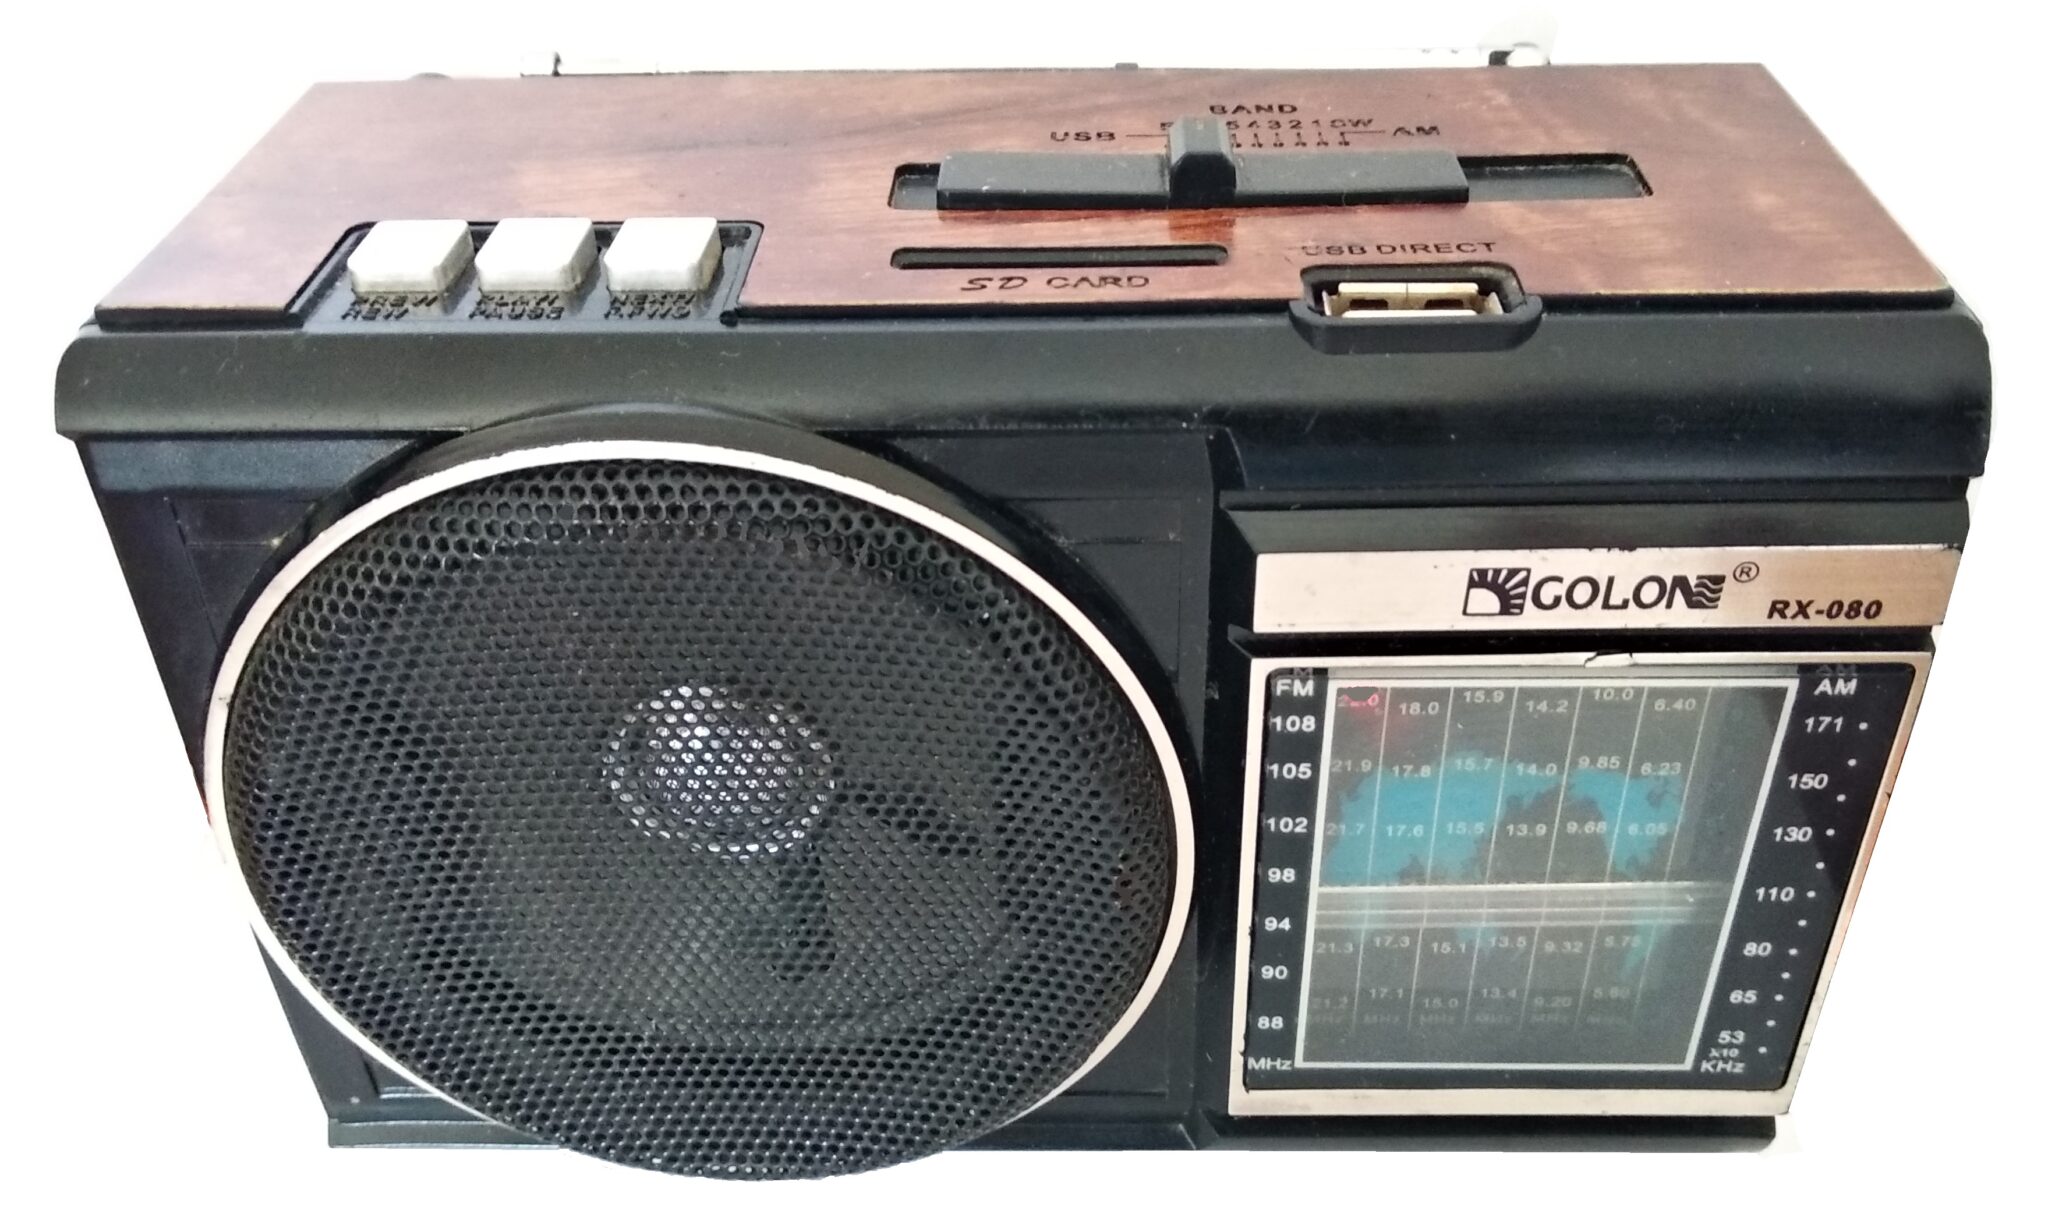 GOLON RX-080 — FM, AM, SW1-6 RADIO USB/SD